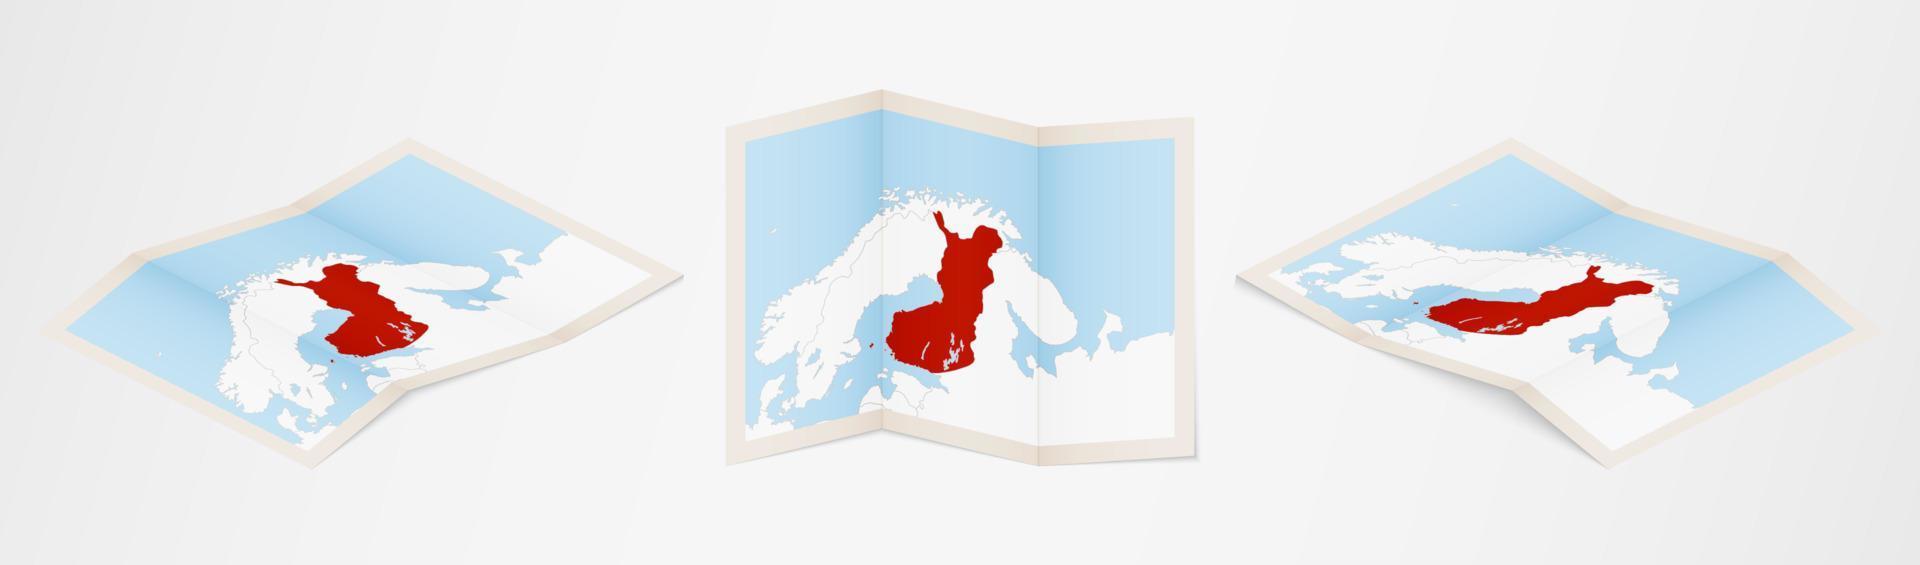 Faltkarte von Finnland in drei verschiedenen Versionen. vektor